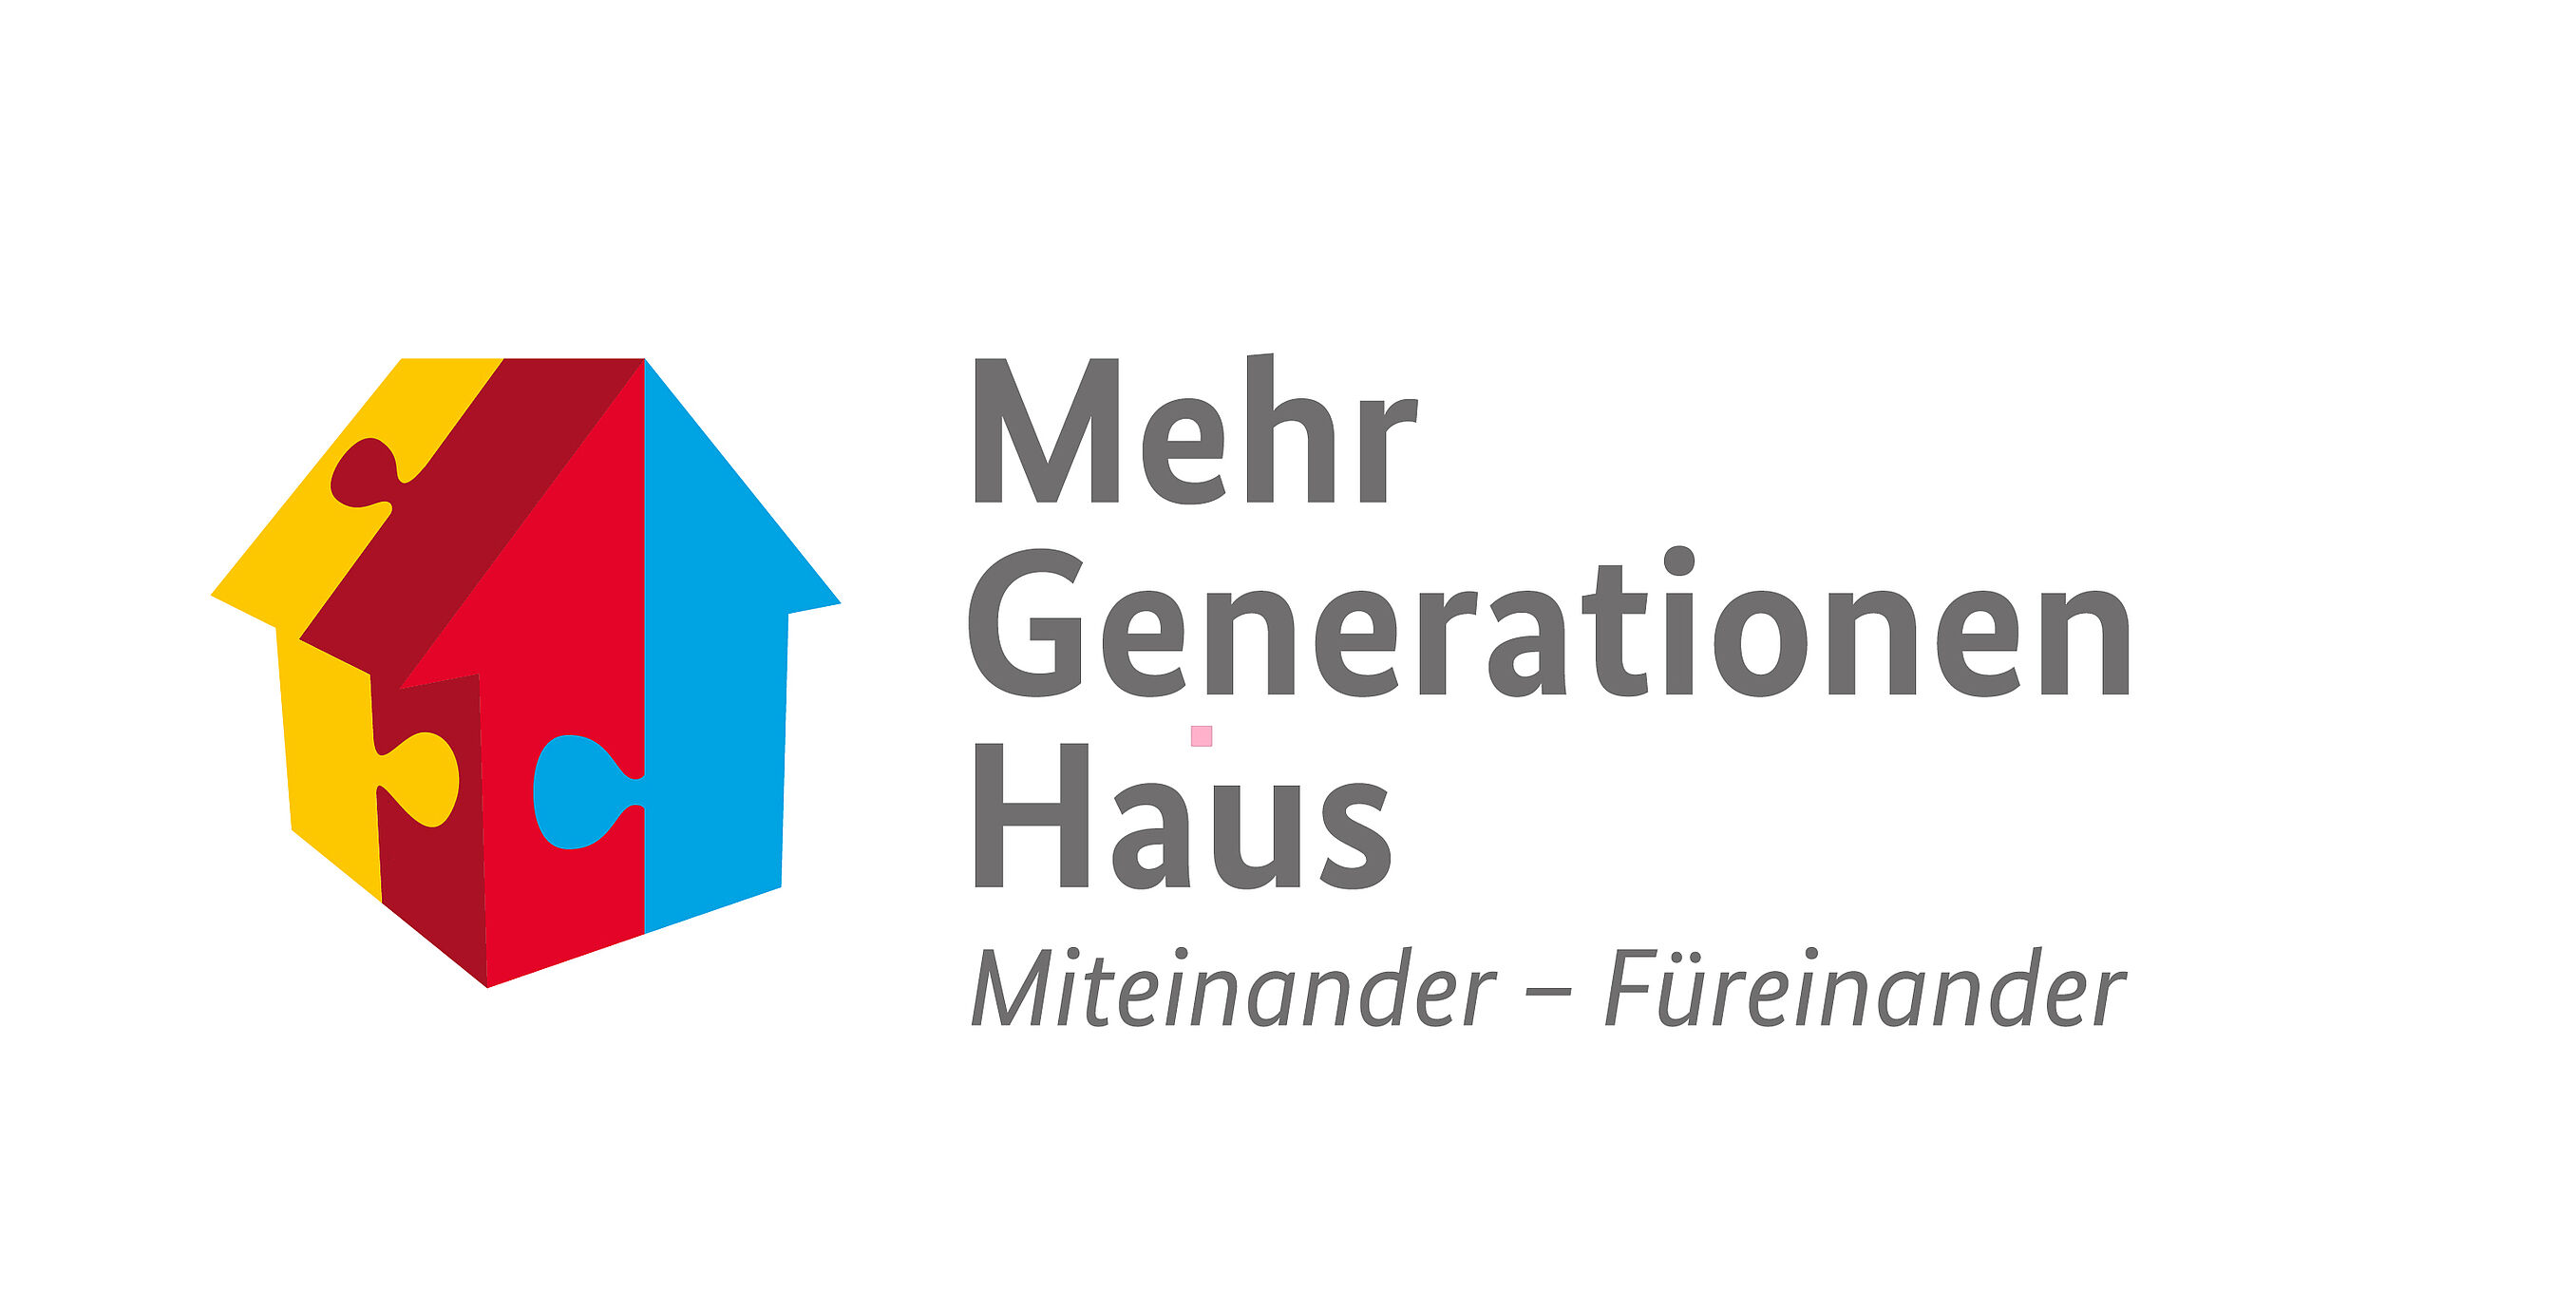 Das Logot zum Bundesprogramm Mehrgenerationenhäuser